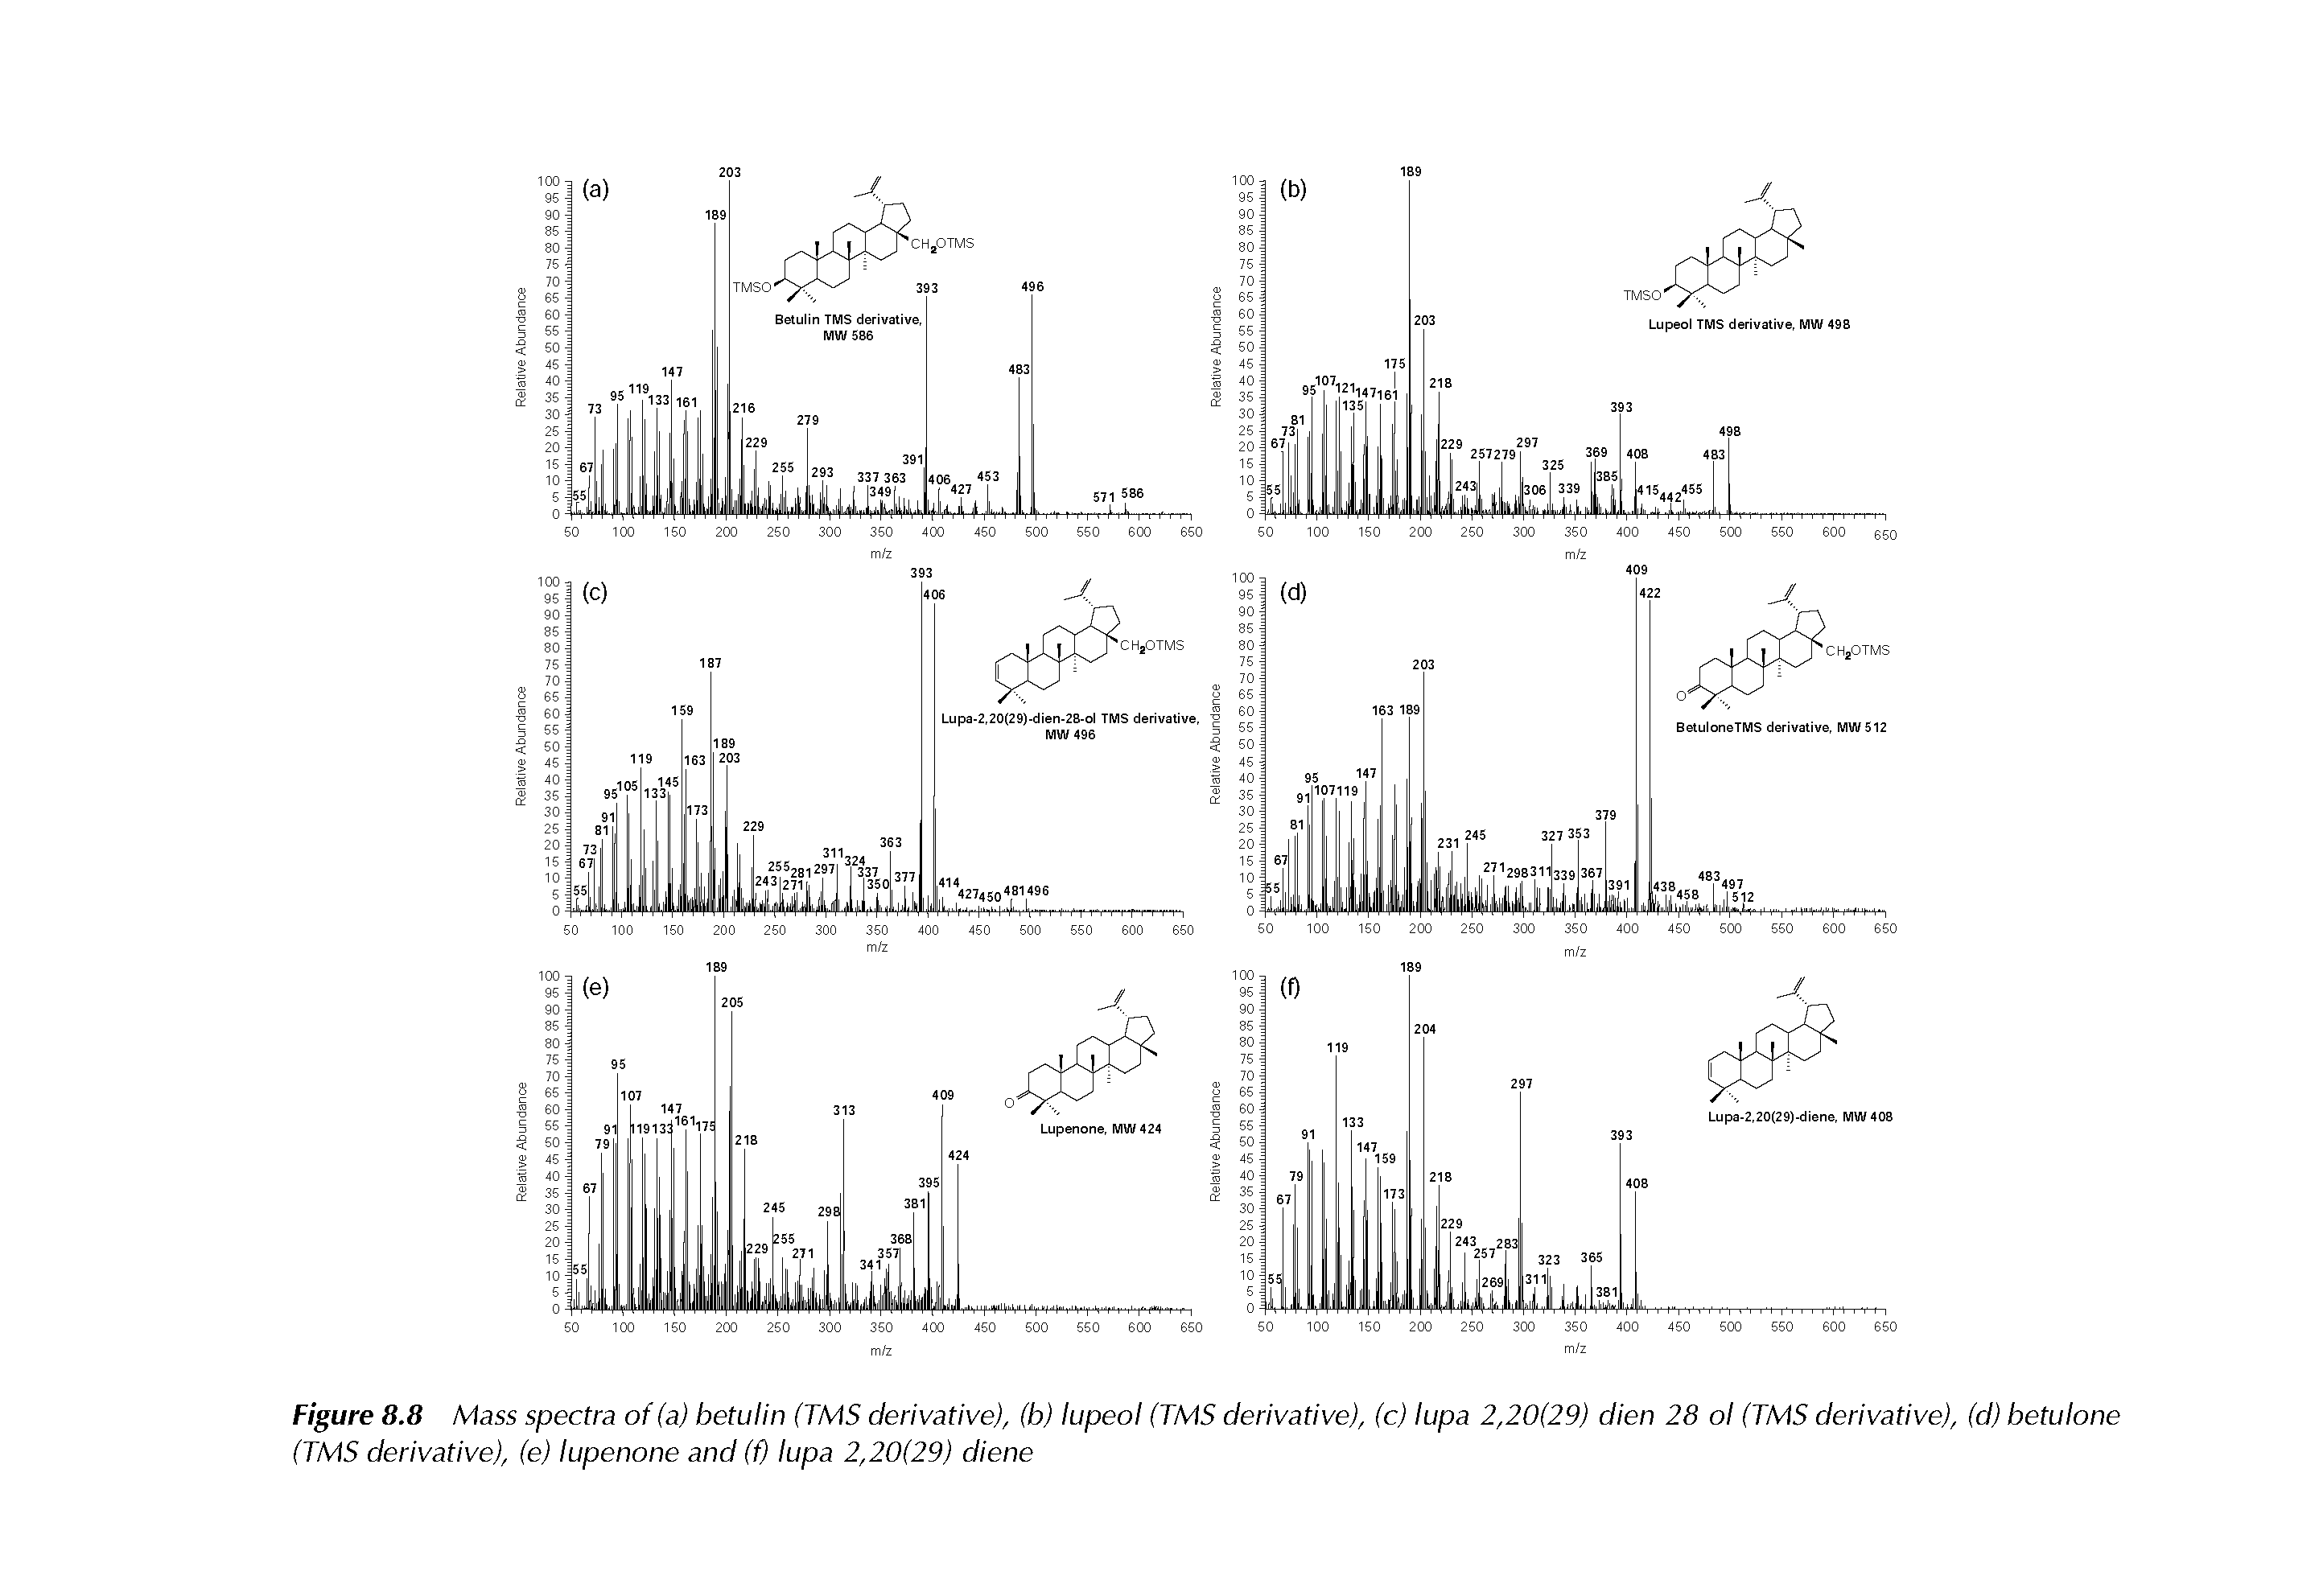 Figure 8.8 Mass spectra of (a) betulin (TMS derivative), (b) lupeol (TMS derivative), (c) lupa 2,20(29) dien 28 ol (TMS derivative), (d) betulone (TMS derivative), (e) lupenone and (f) lupa 2,20(29) diene...